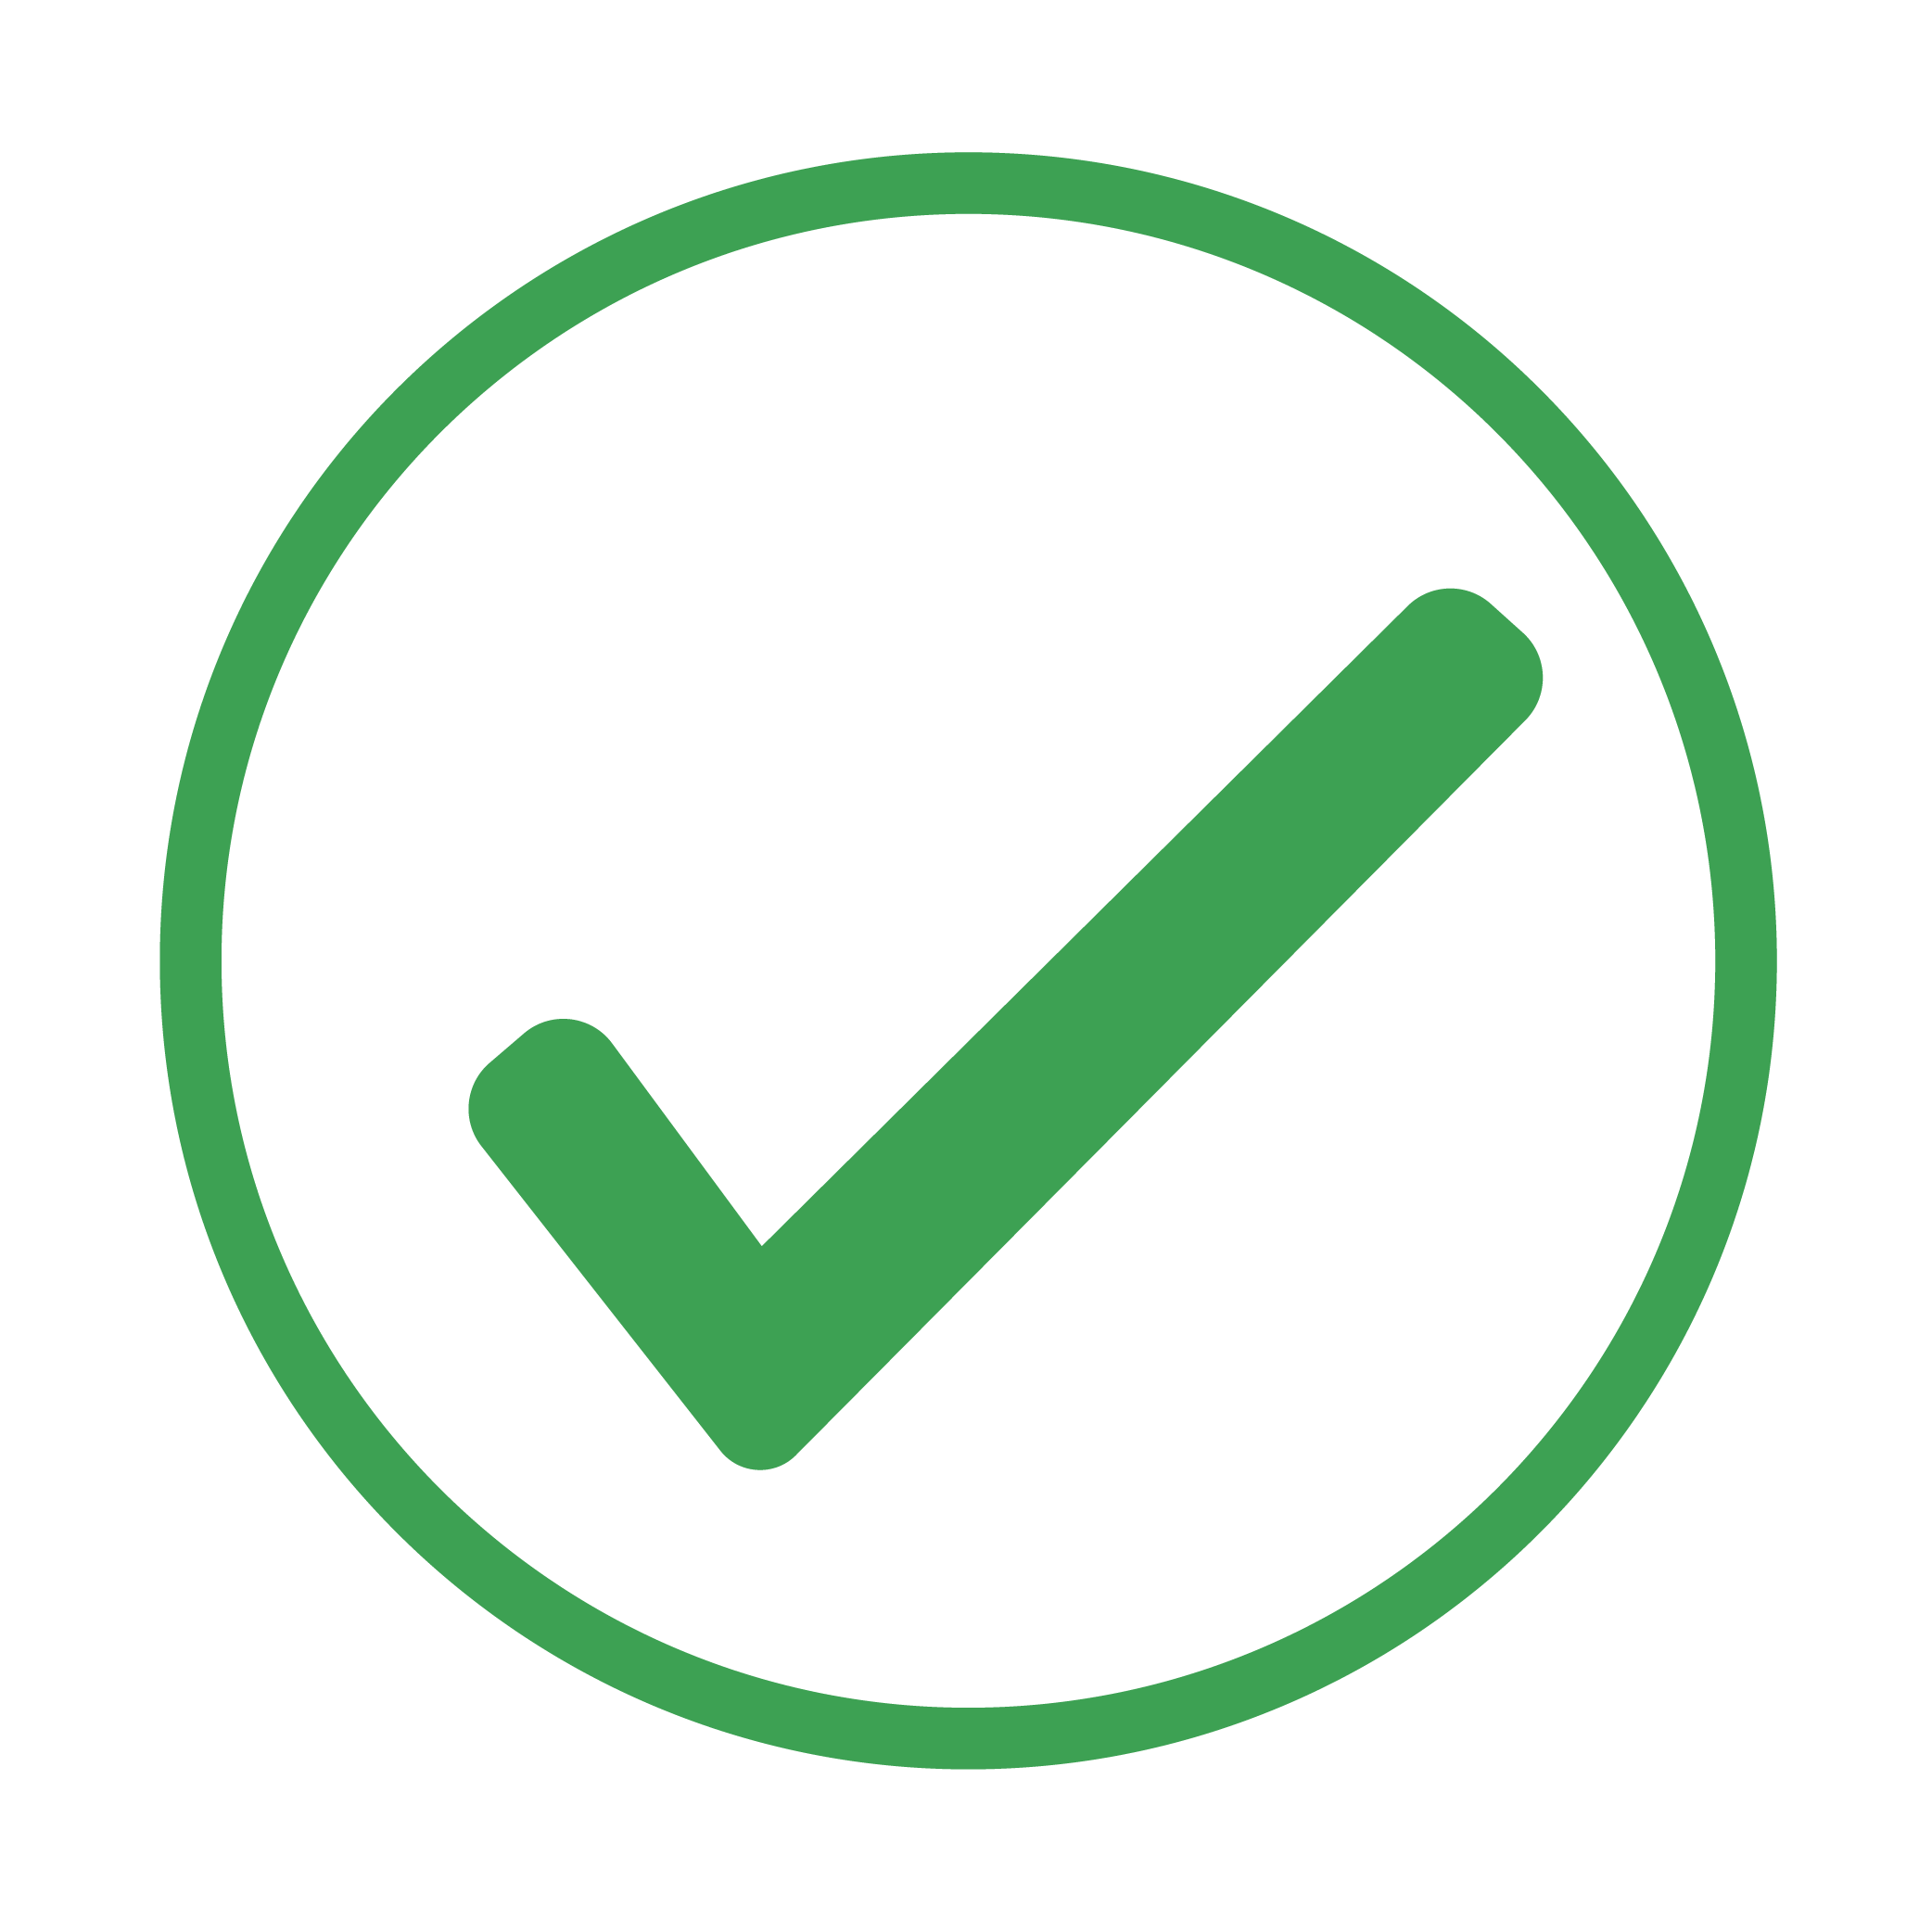 green icon of a checkmark